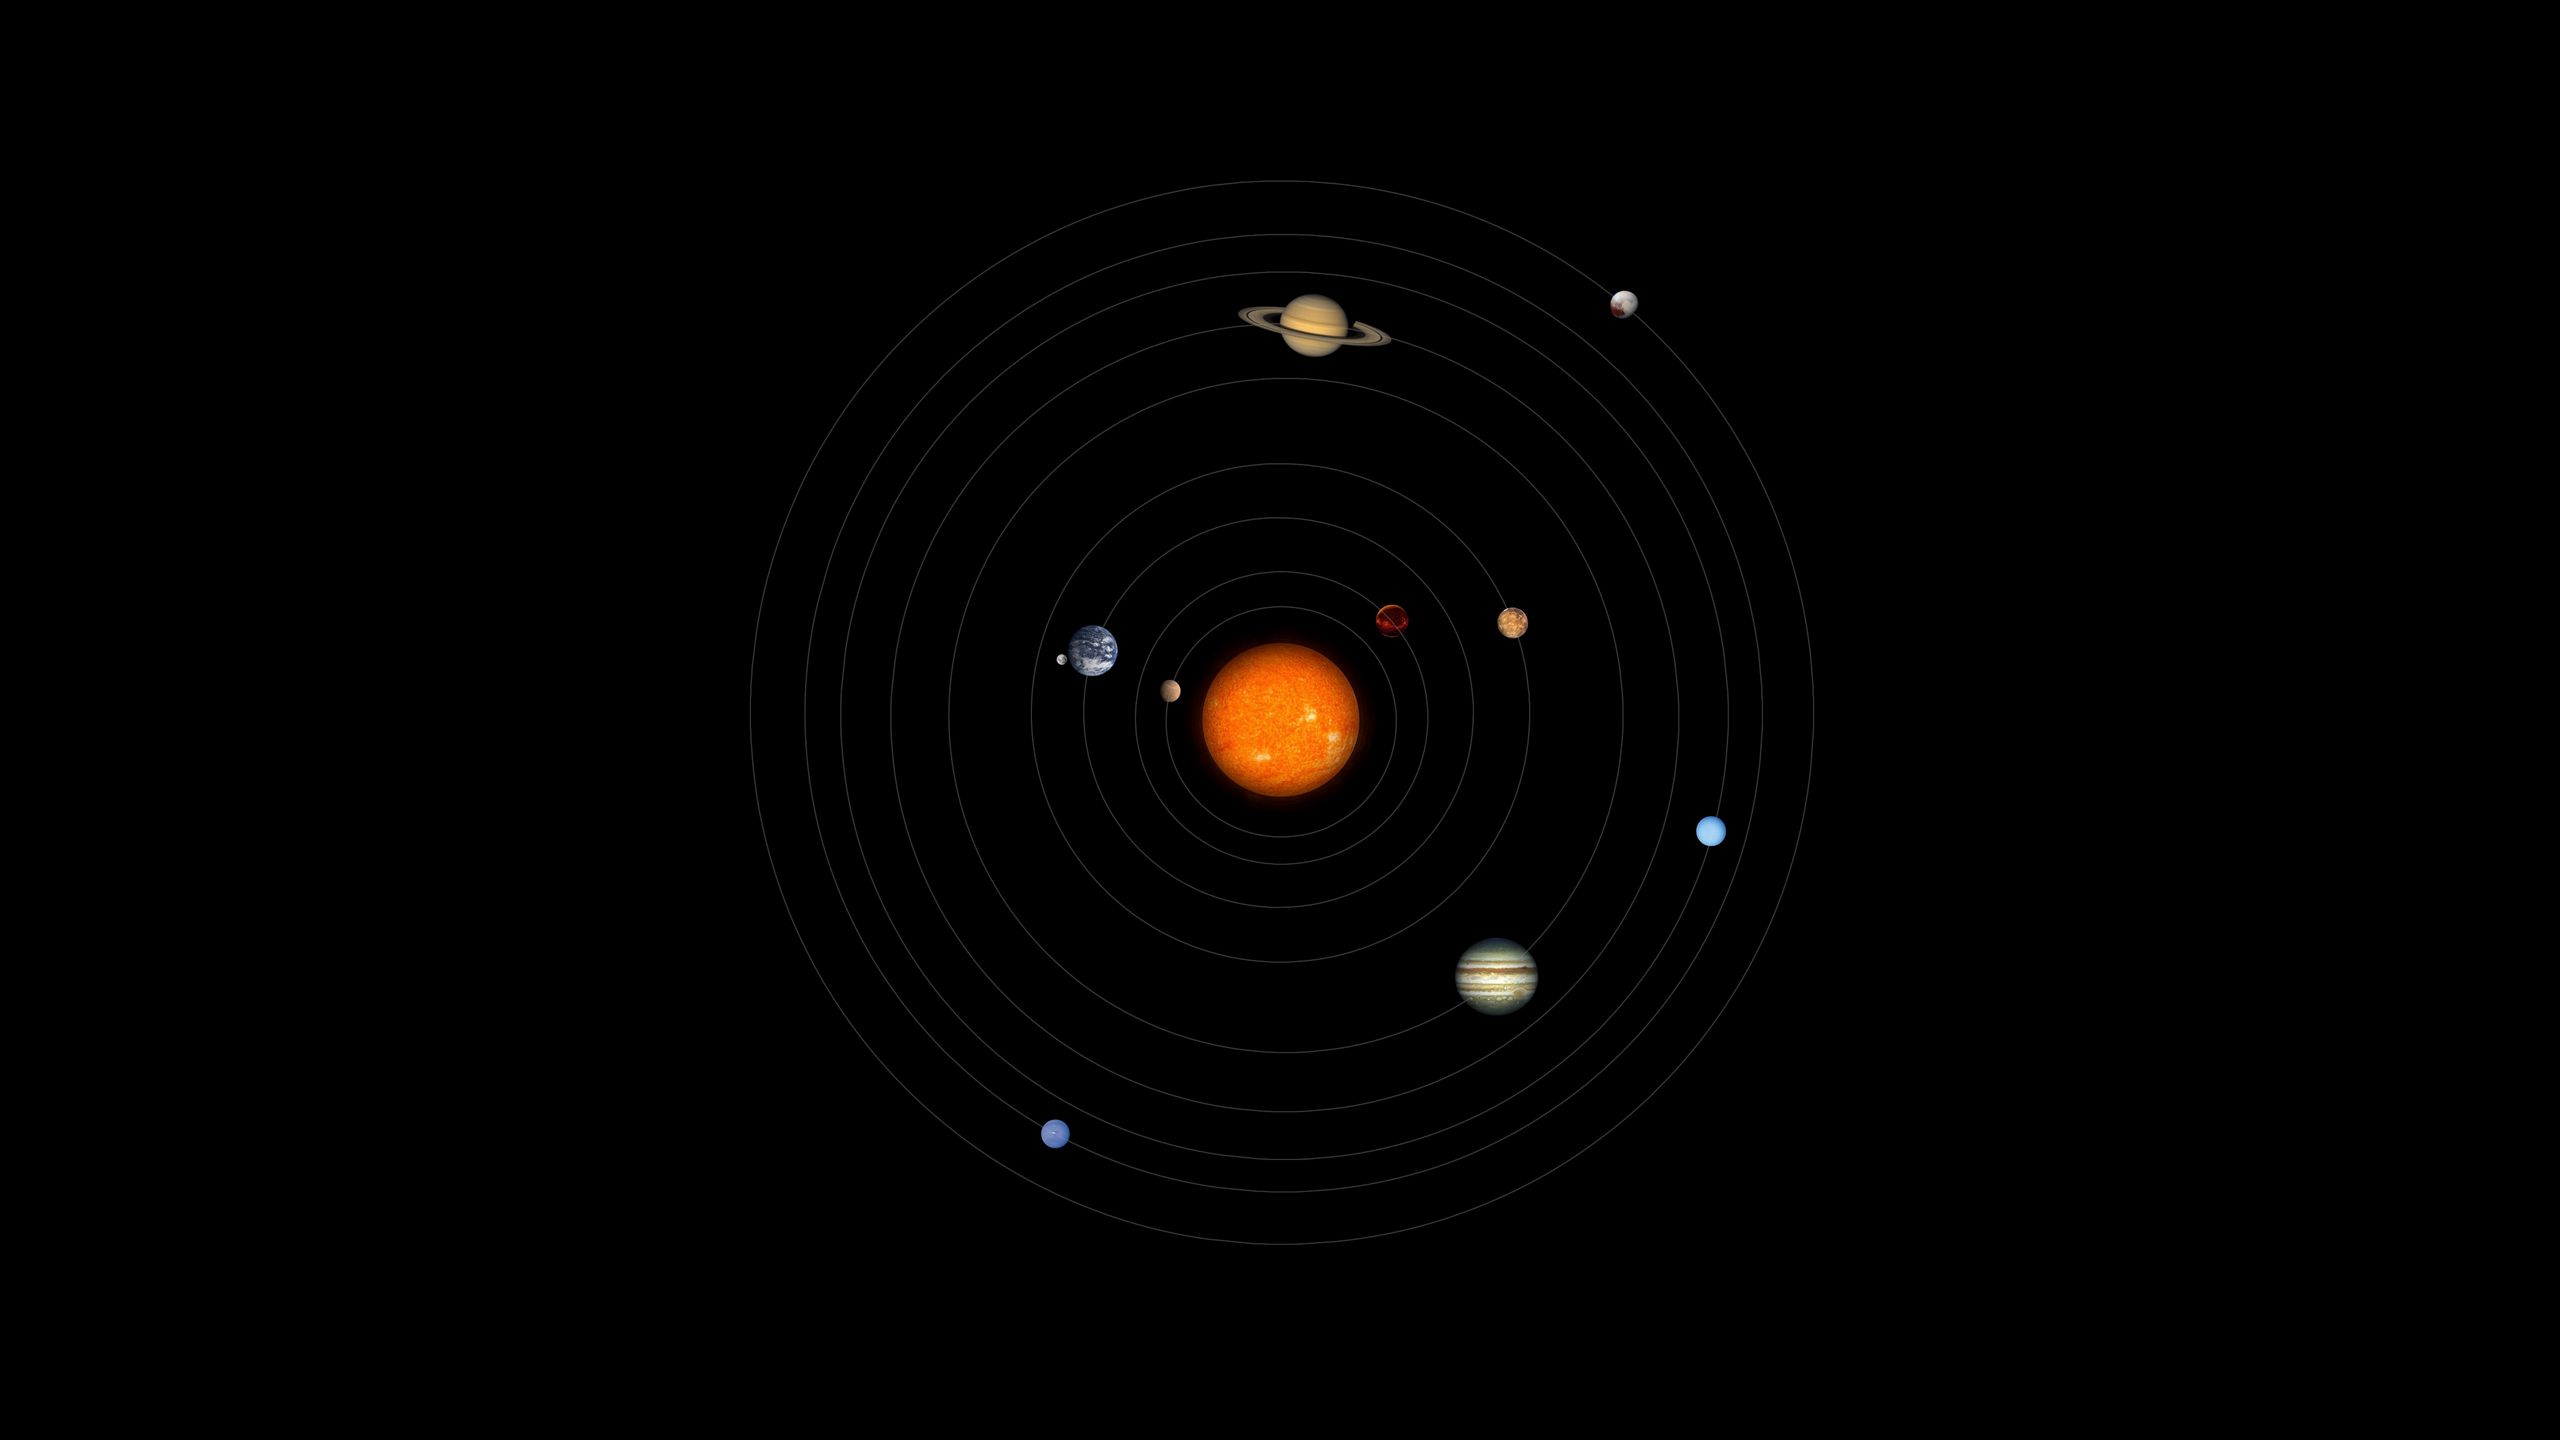 2560x1440 солнечная система, планеты, космос, астрономия, круги обои 16:9.